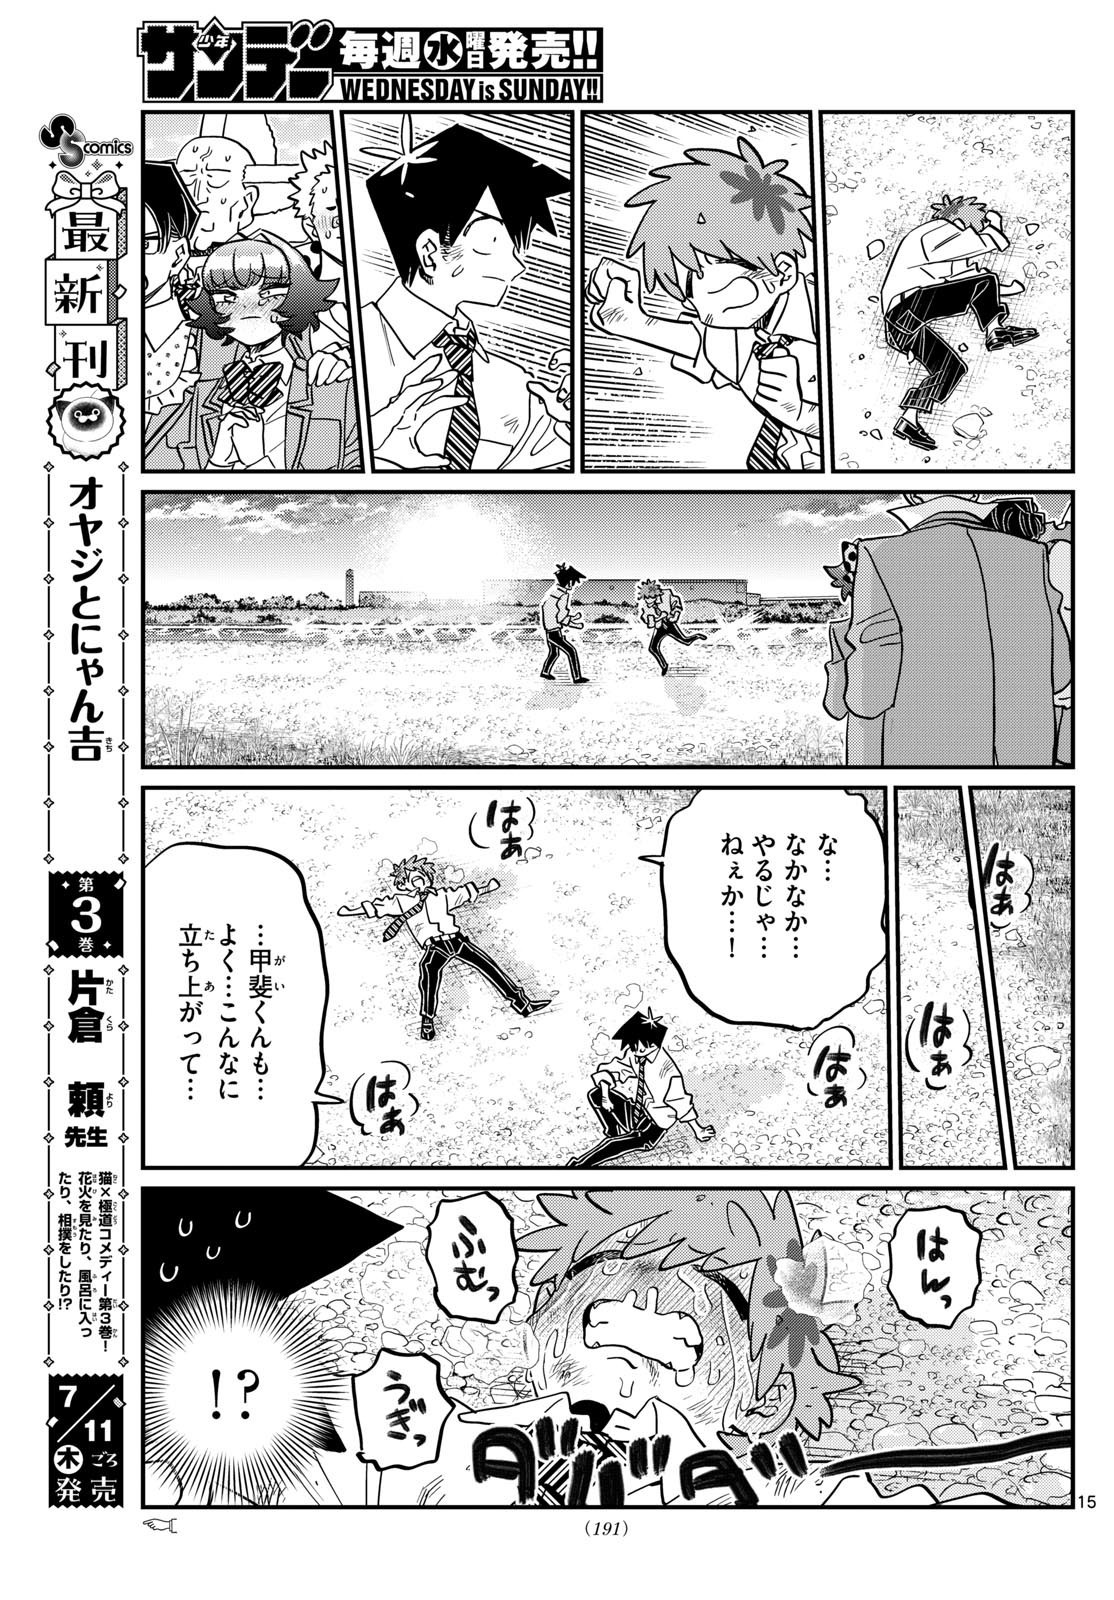 Komi-san wa Komyushou Desu - Chapter 471 - Page 10